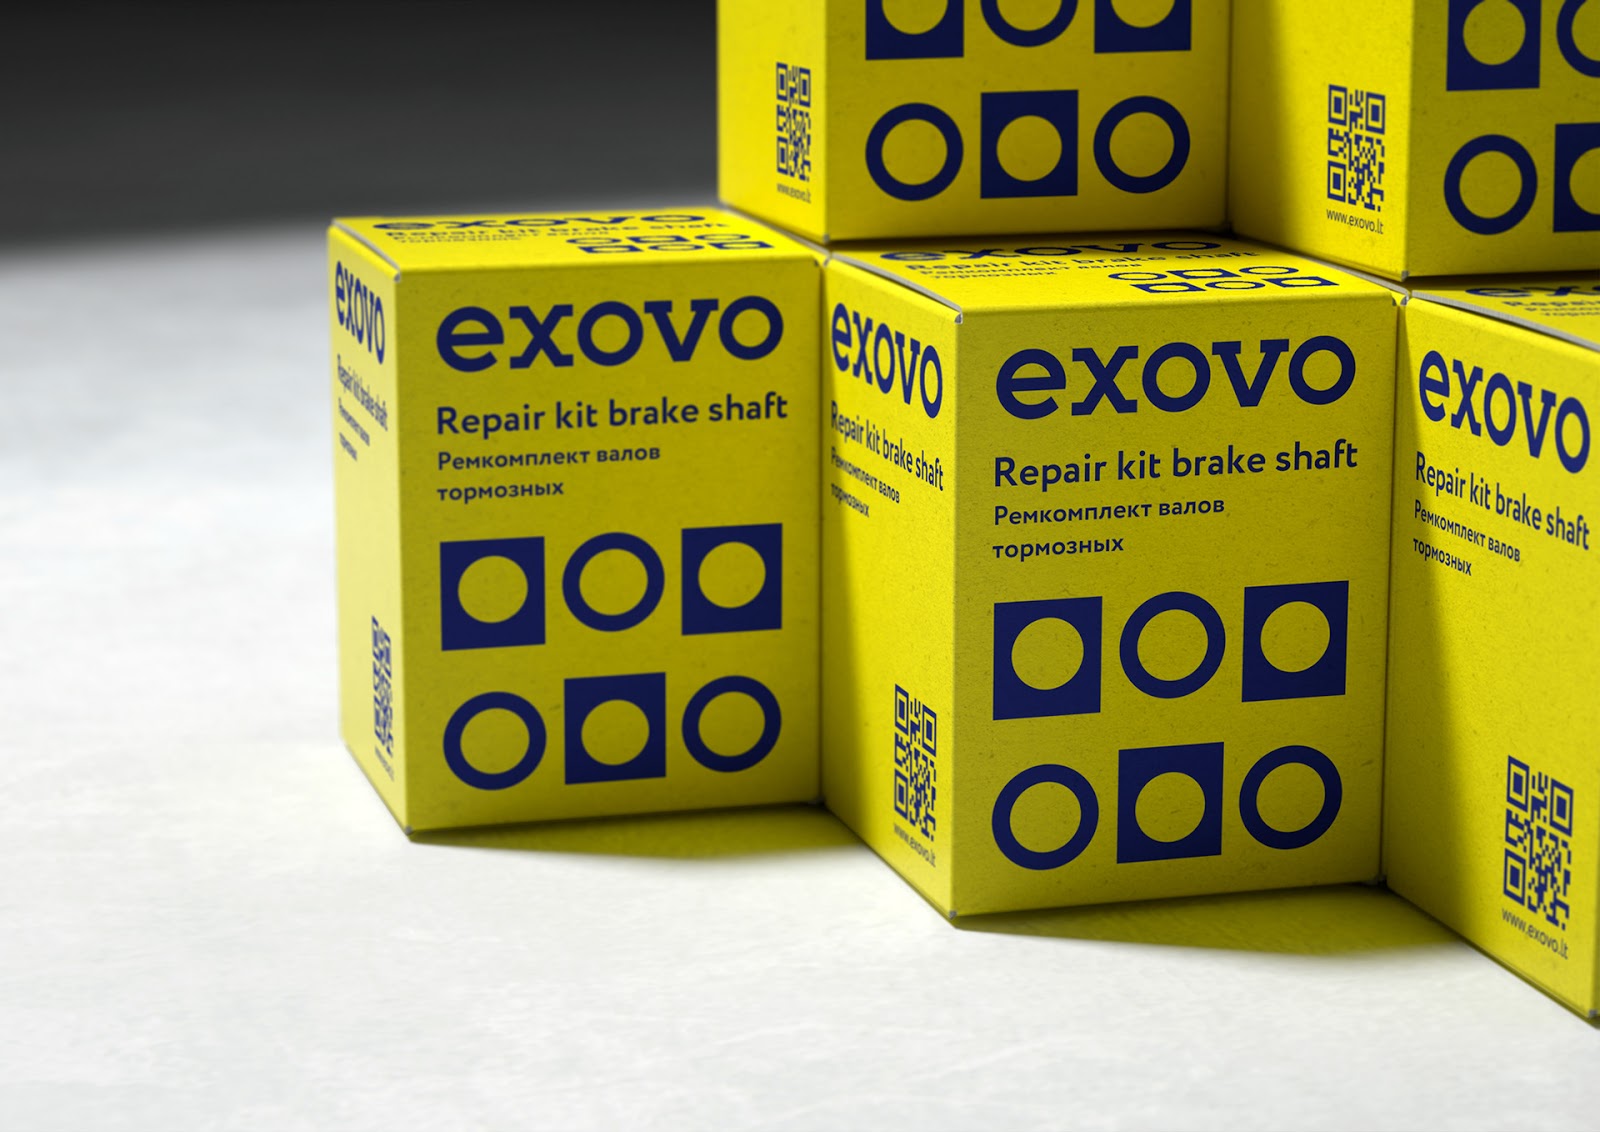 Exovo汽车配件包装设计欣赏(图6)